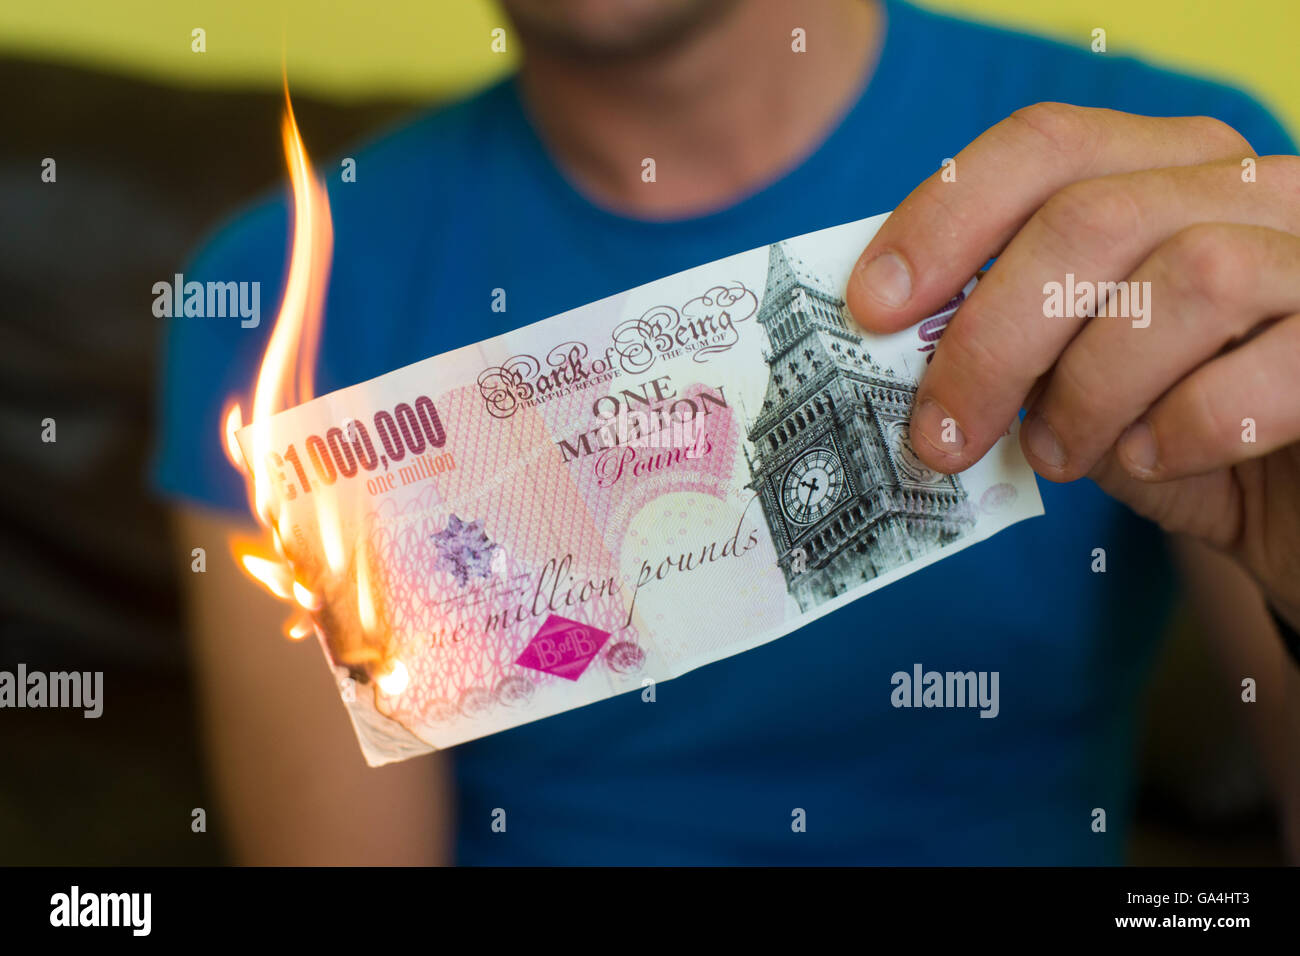 Un homme en train de mettre le feu à un million pound note, symbole de l'effondrement de l'économie britannique post brexit ; de l'argent en fumée Banque D'Images